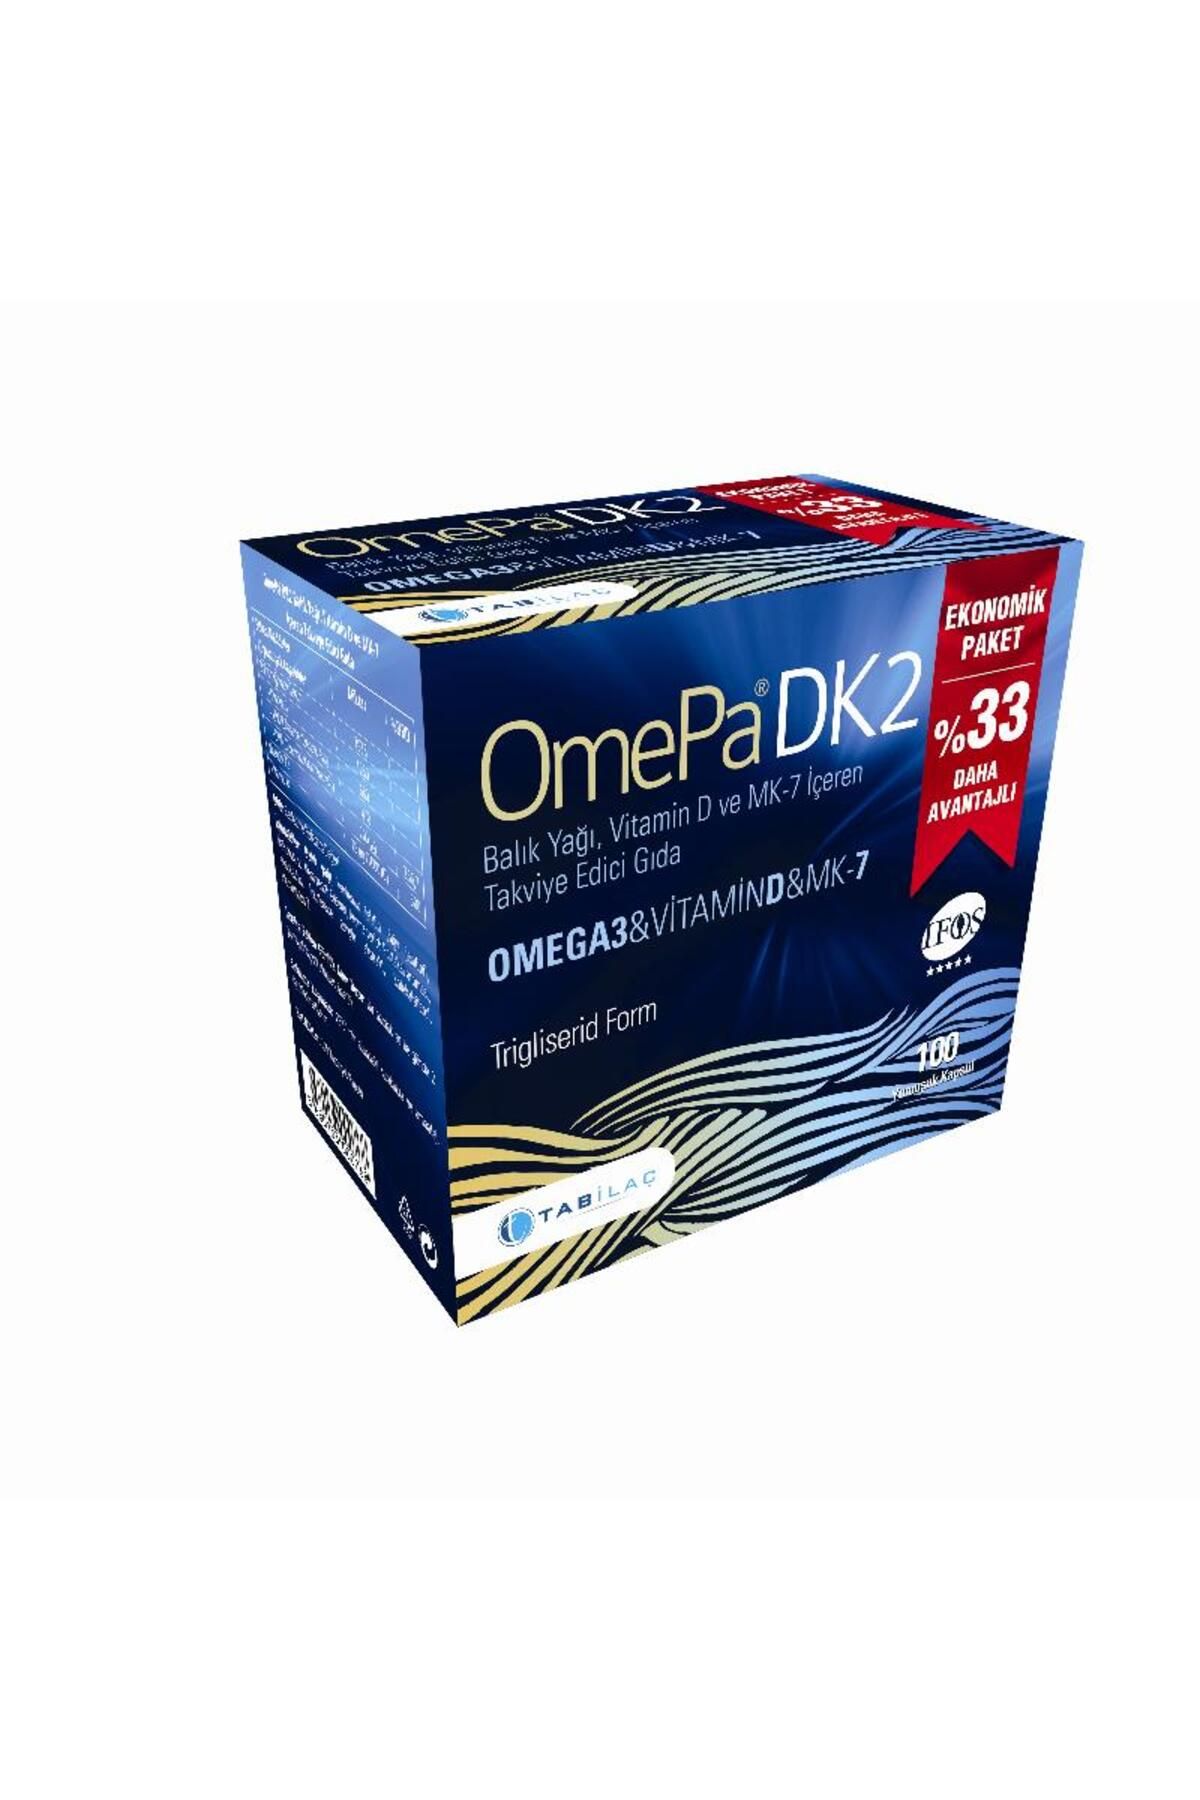 Omepa Dk2 Omega 3 & Vitamin D & Menaq7 100 Yumuşak Kapsül